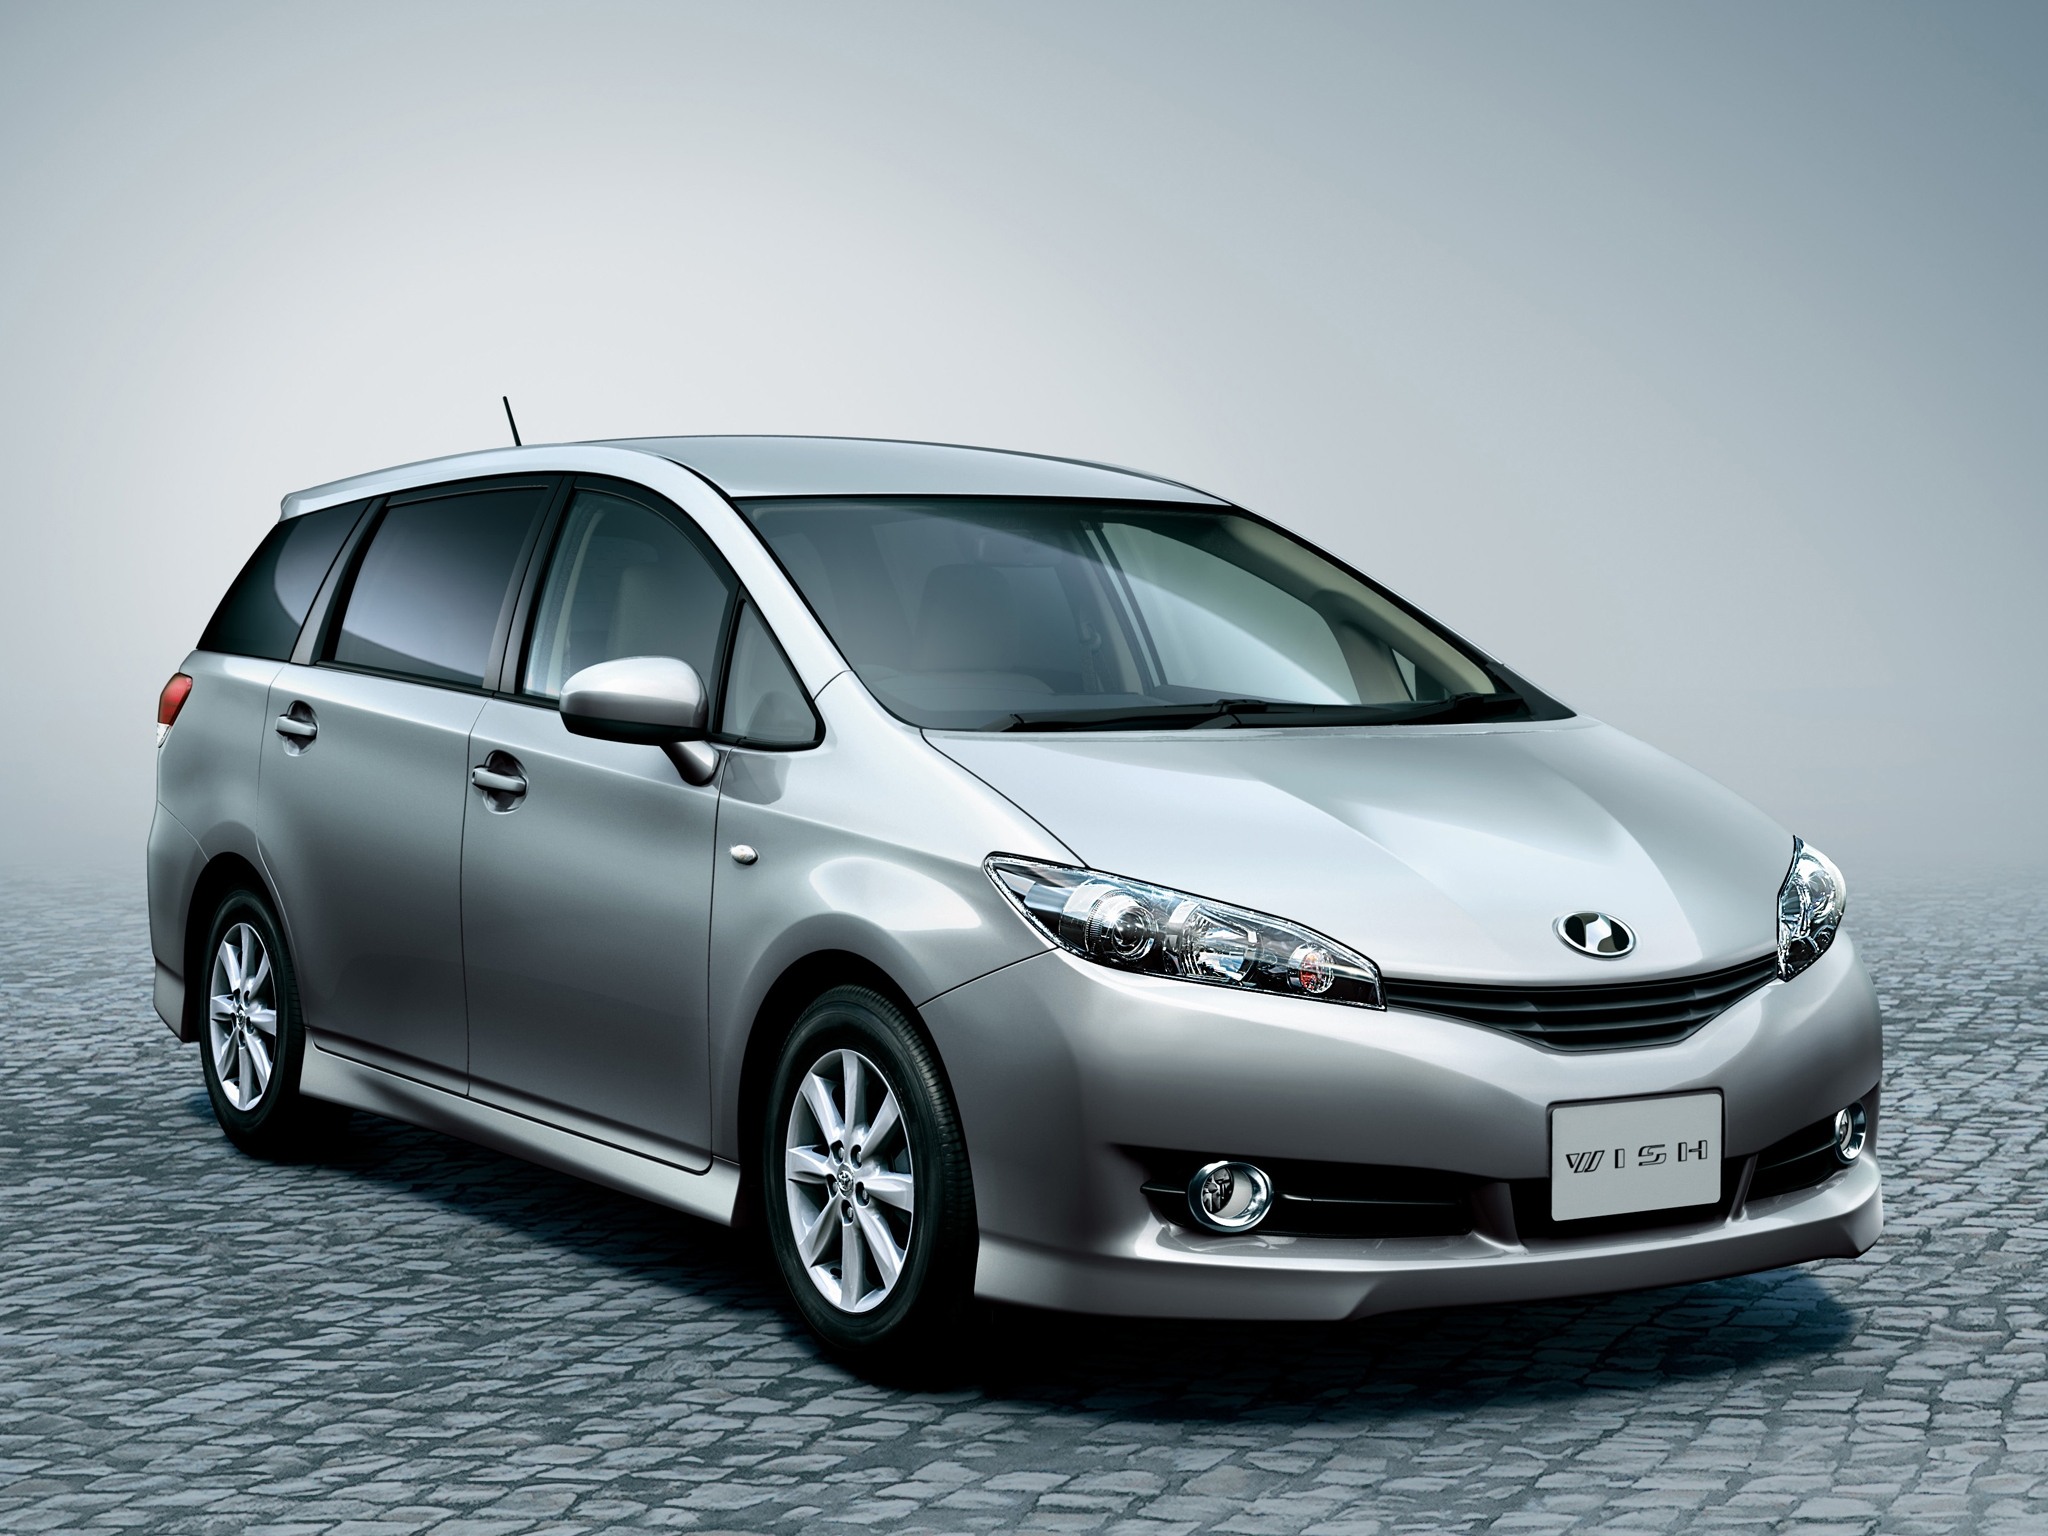 Toyota Wish (Тойота Wish) 2020 - обзор модели c фото и видео